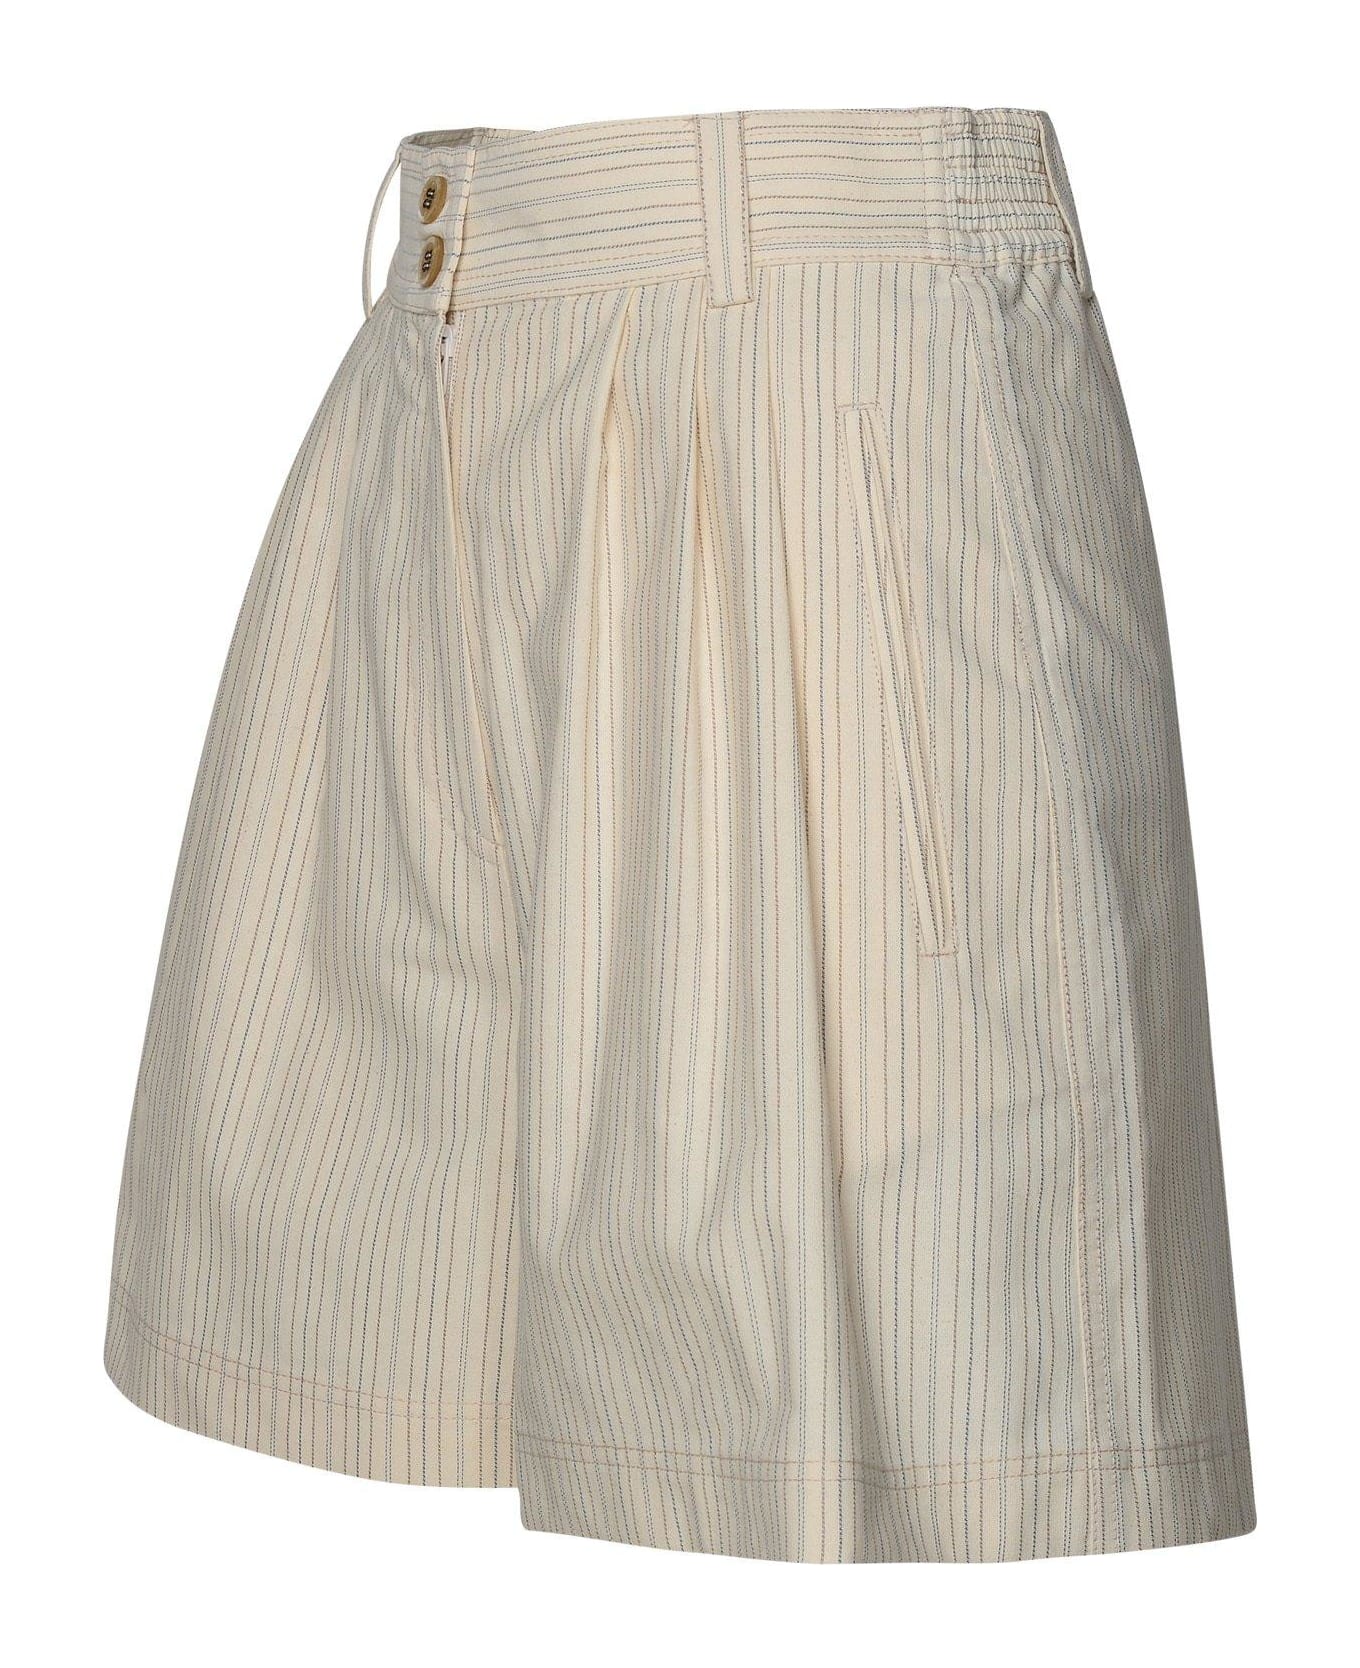 Golden Goose High-waist Striped Shorts - Ecru/eclipse/gold ショートパンツ